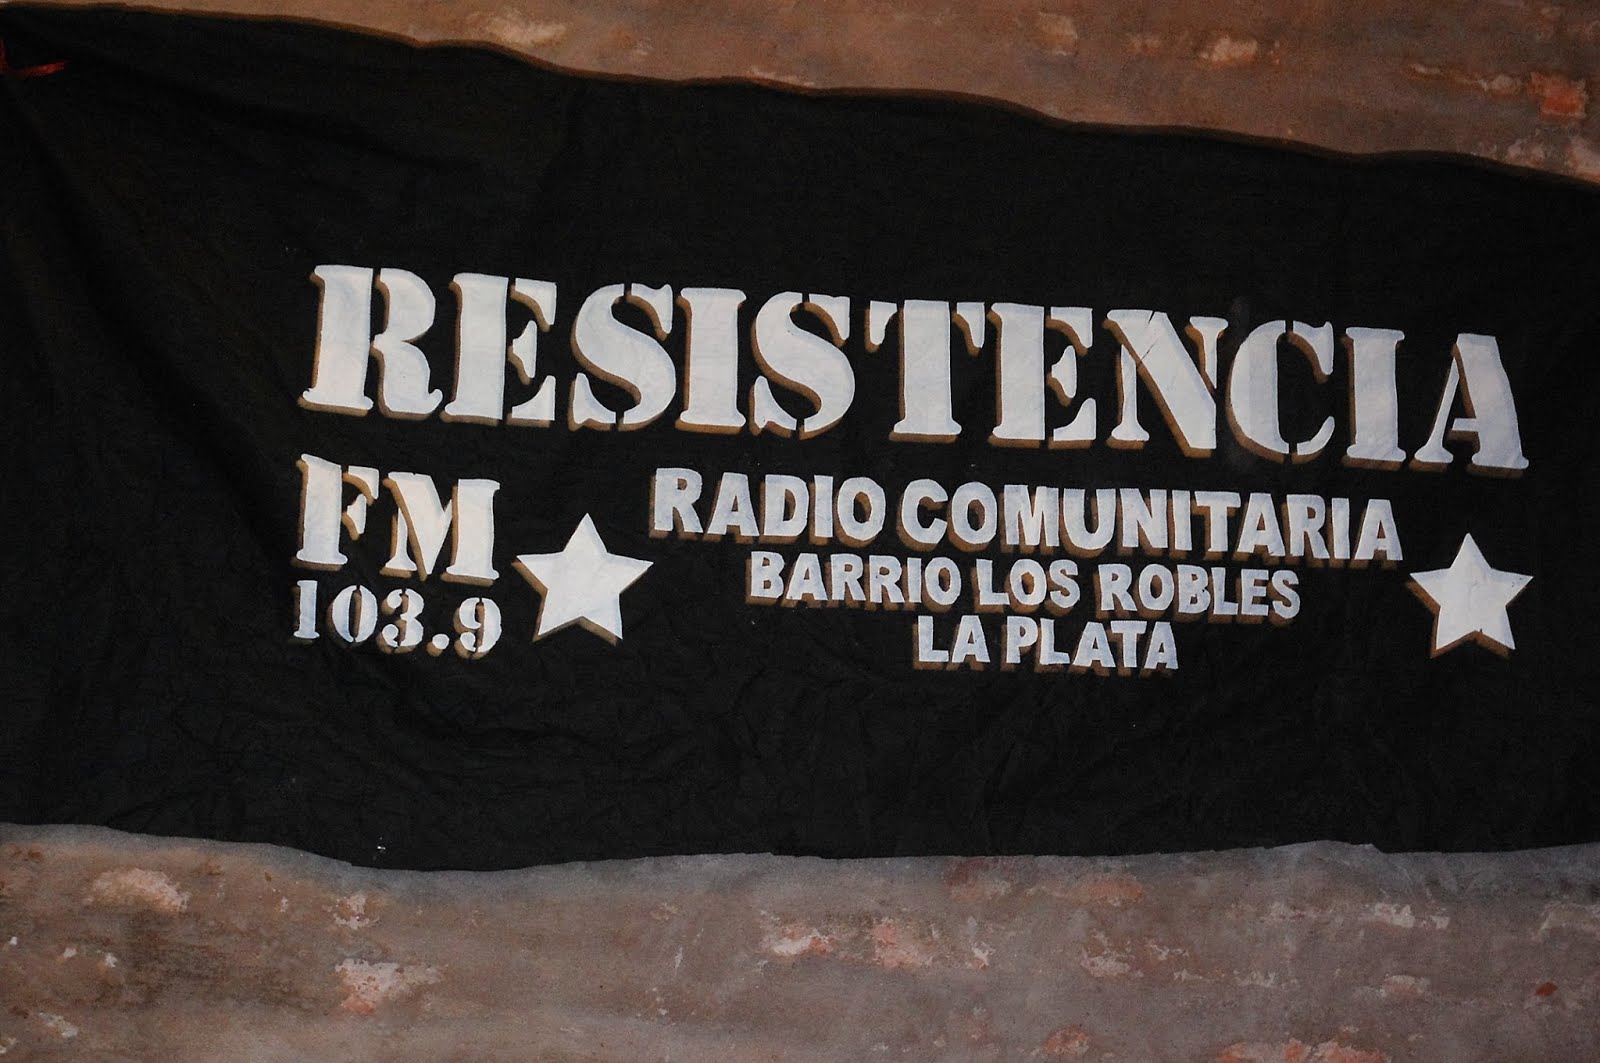 FM Resistencia